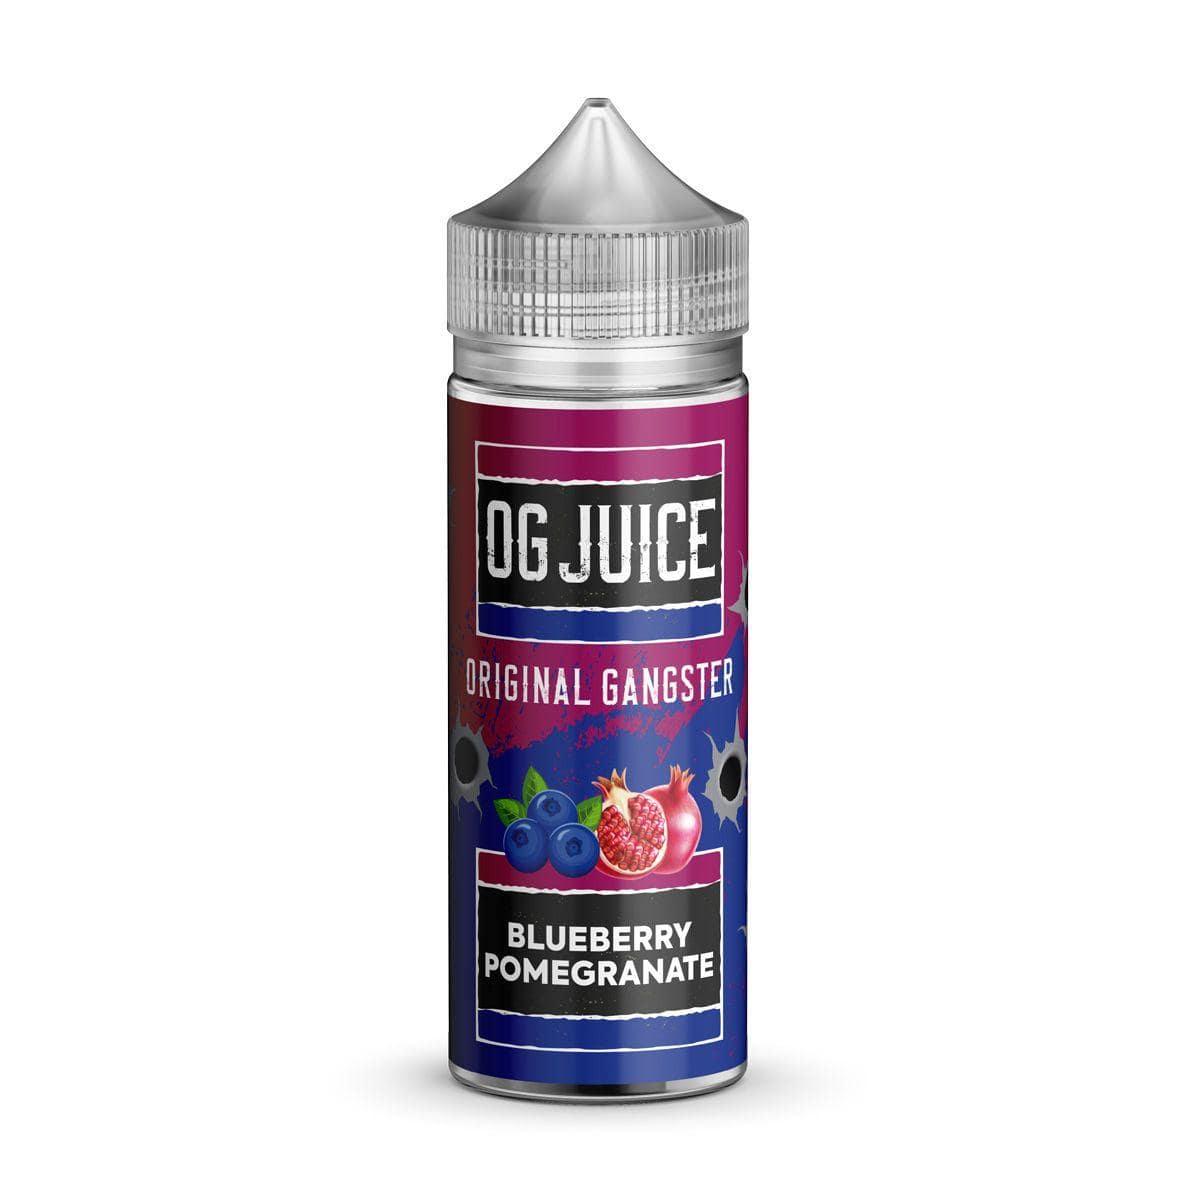 OG Juice Original Gangster - Blueberry Pomegranate - 100ml E-liquid Shortfill - Mcr Vape Distro